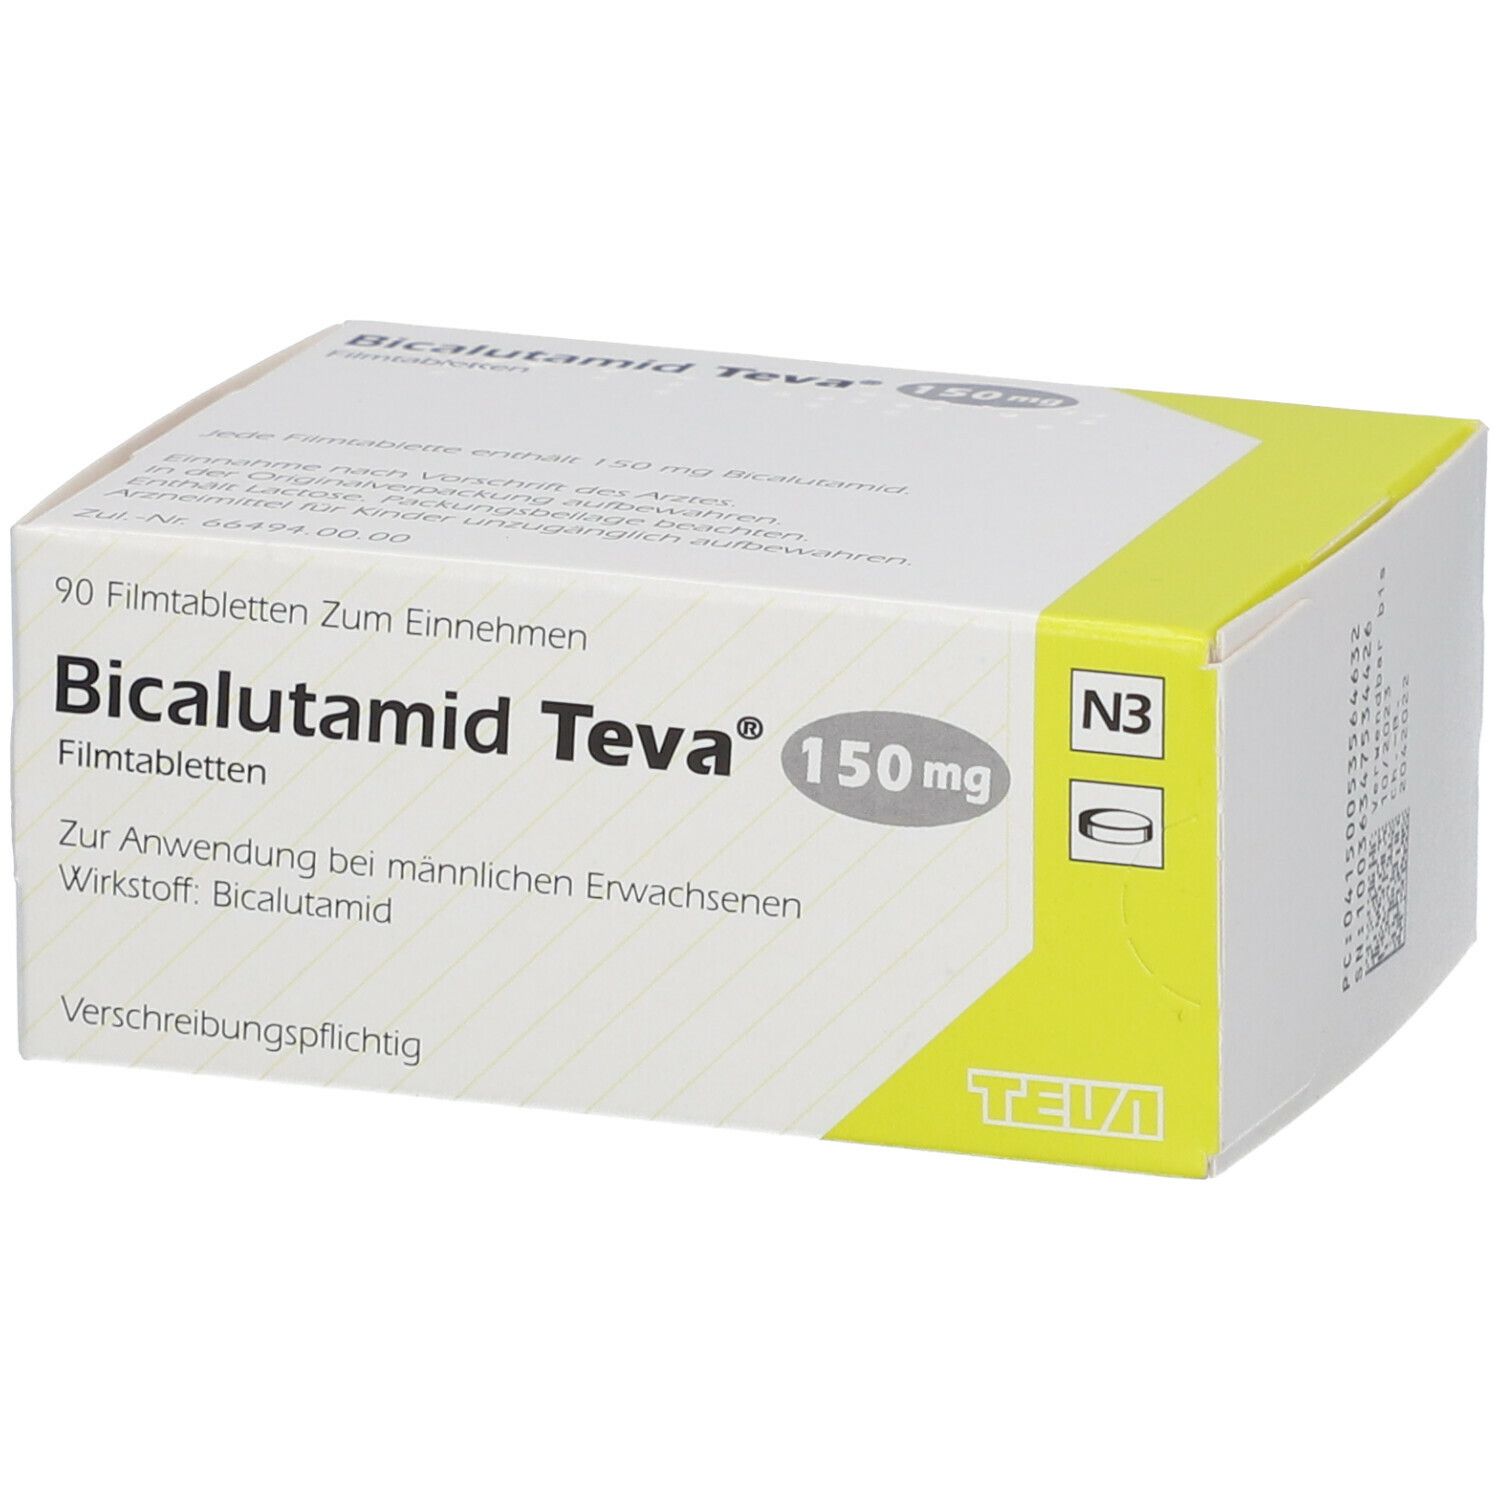 Bicalutamid Teva® mg 90 St - shop-apotheke.com